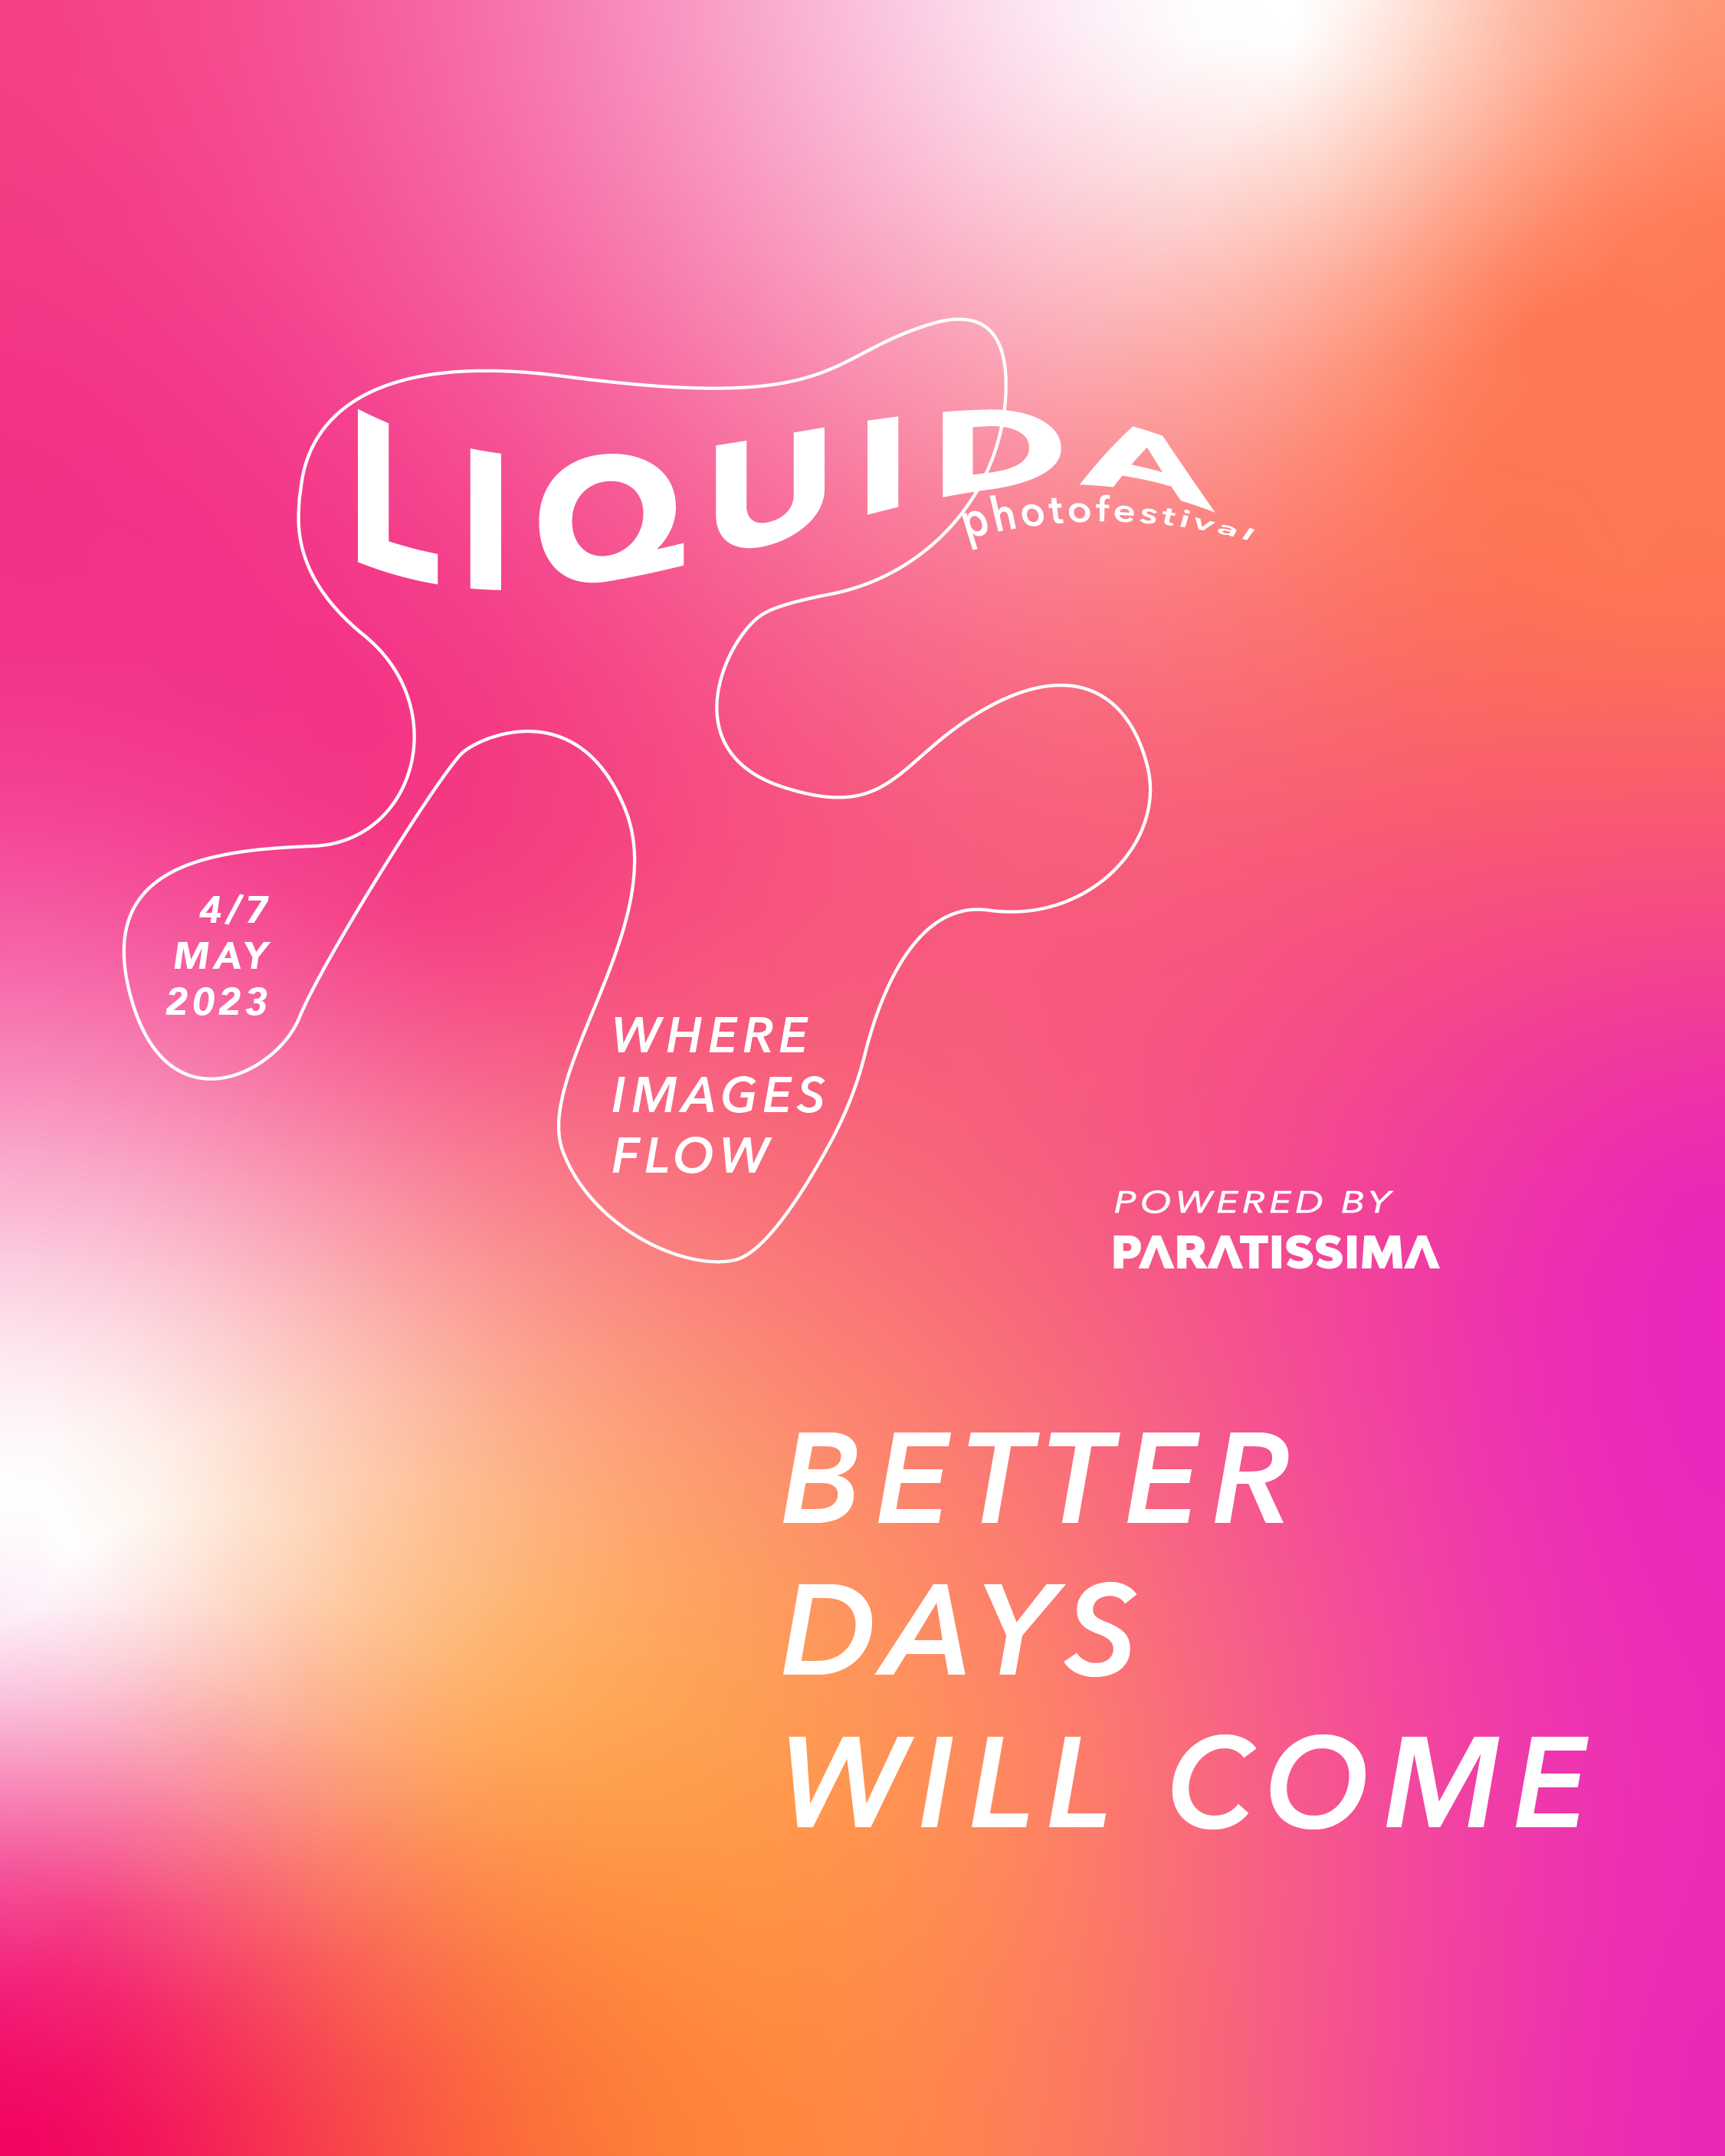 Liquida Photofestival 2023